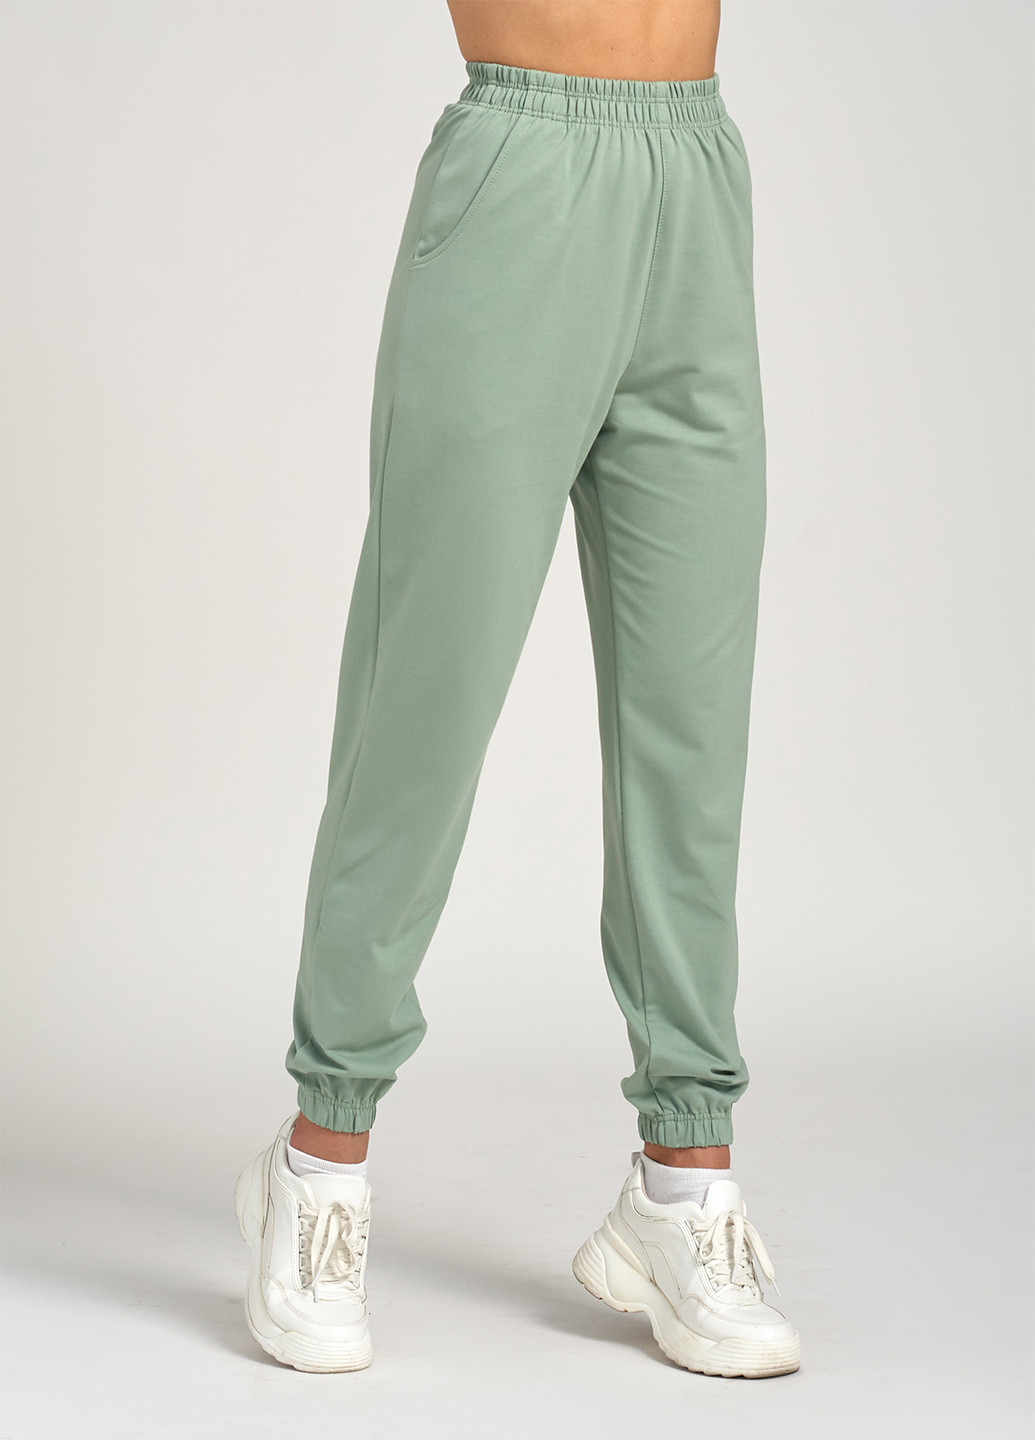 Костюм (свитшот, брюки) Ut однотонный светло-зелёный спортивный трикотаж, хлопок